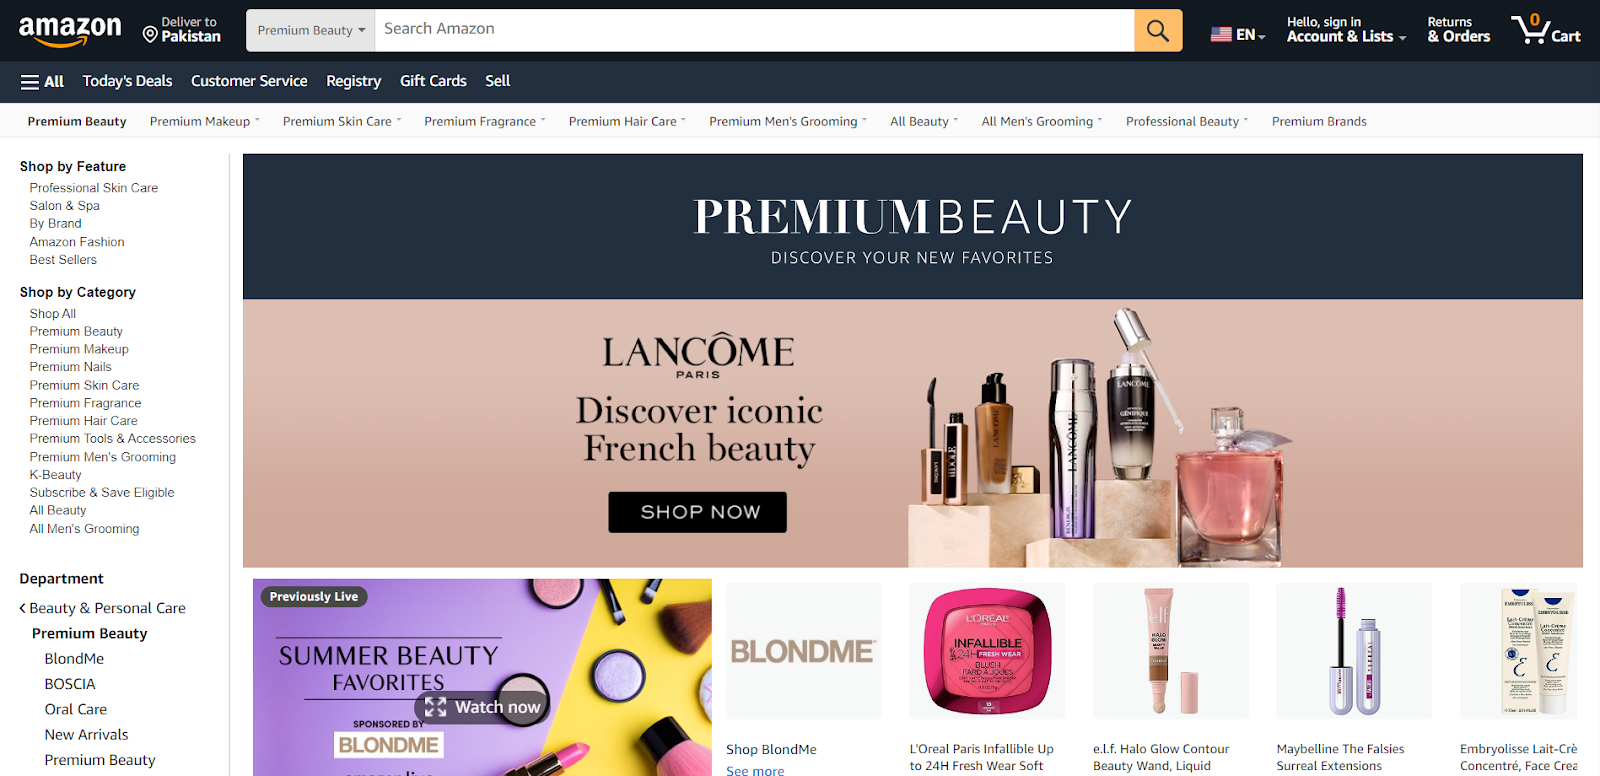 amazon premium beauty fees